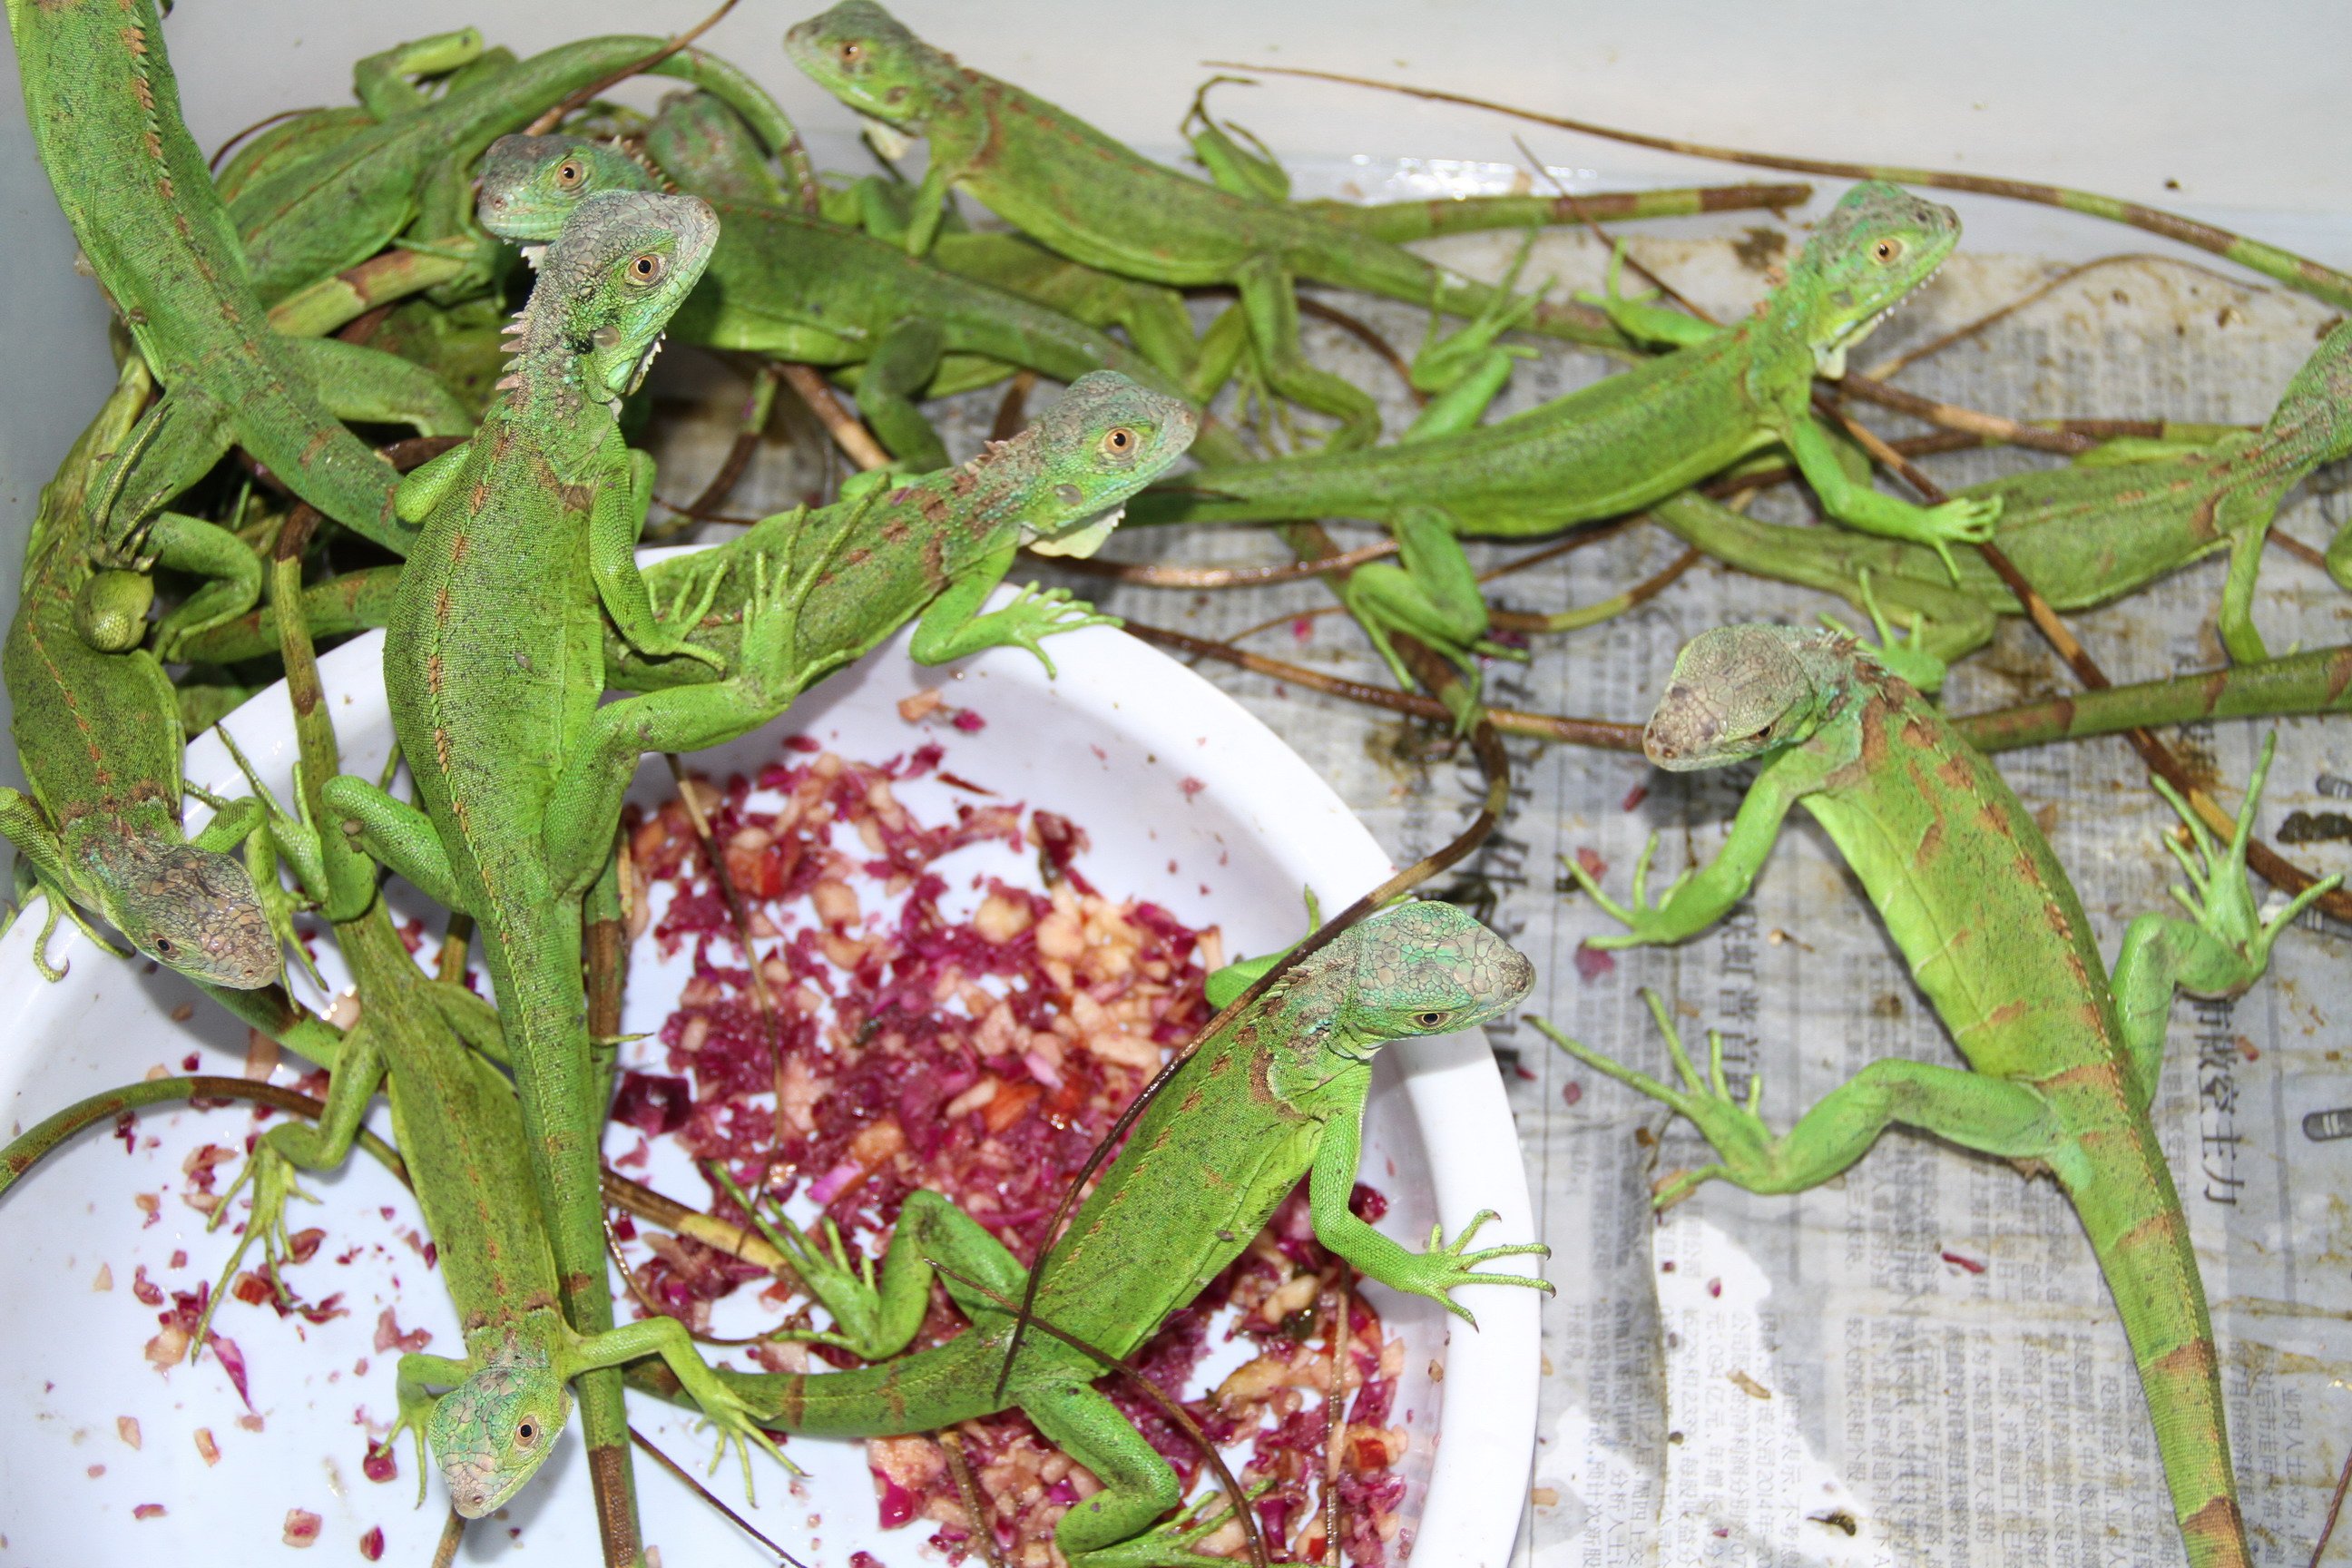 广东顺德检验检疫局截获非法携带入境的100只活蜥蜴